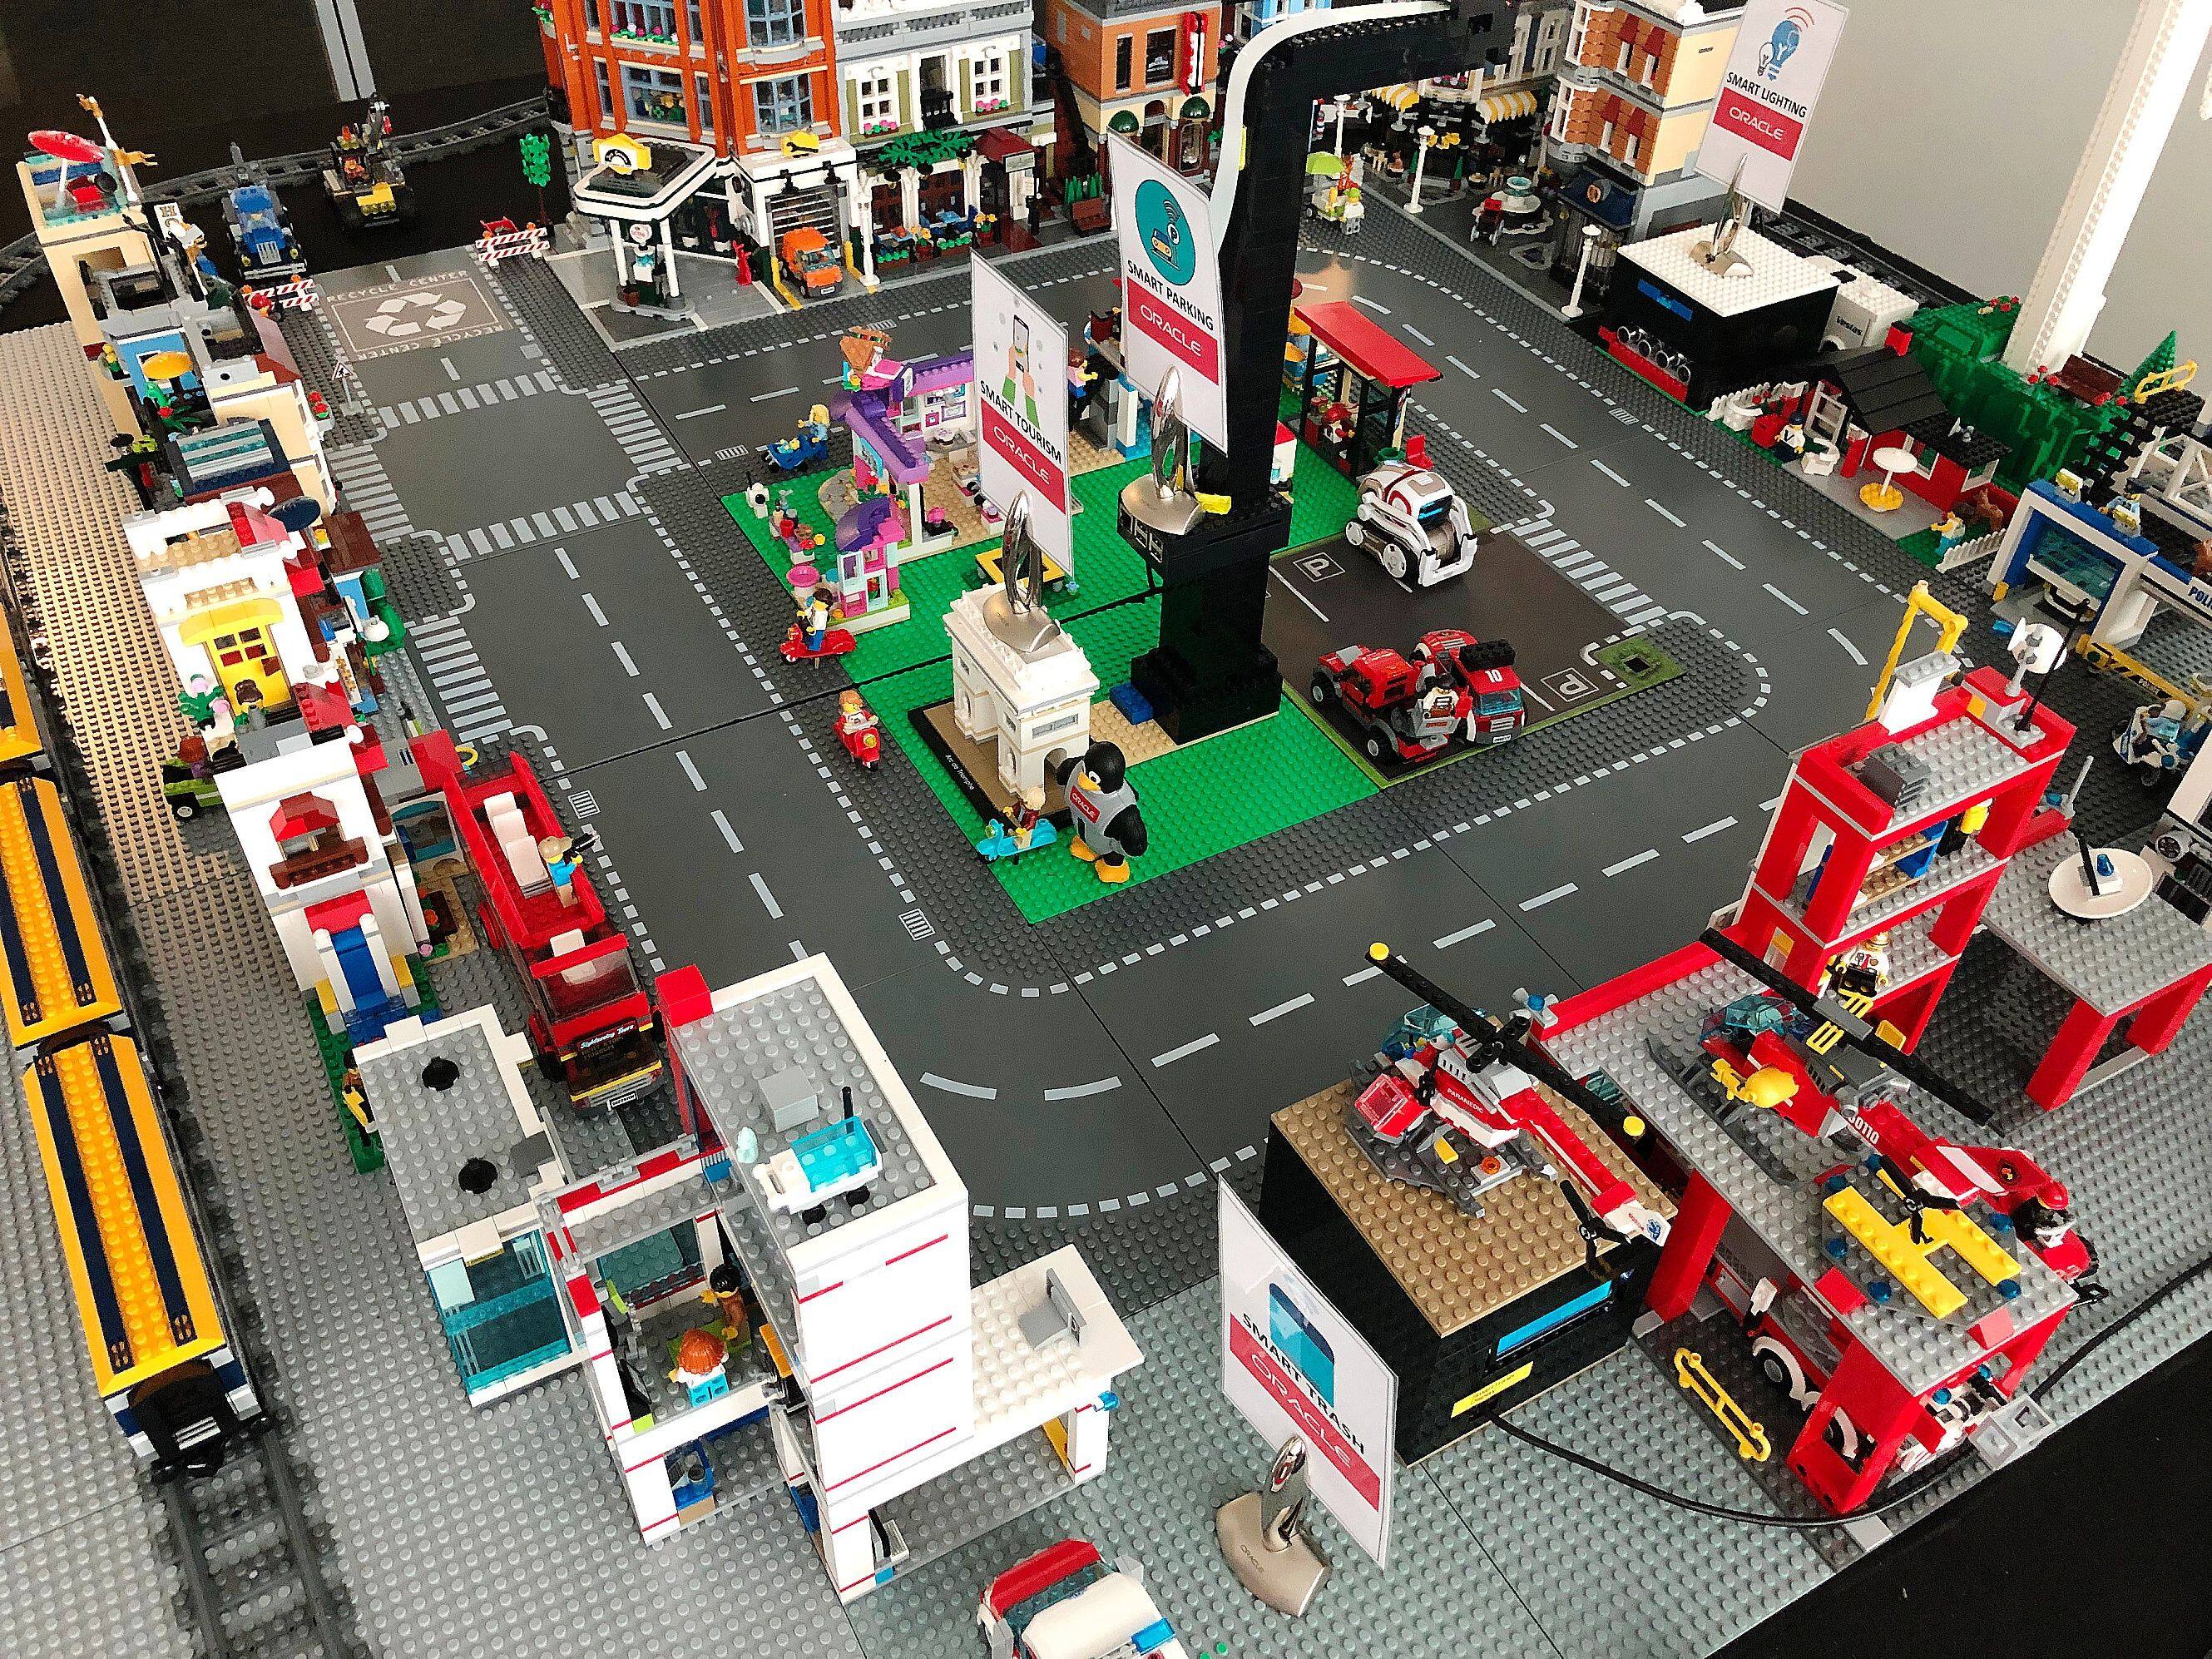 Comment les Lego intelligents préfigurent les villes de demain - La Libre